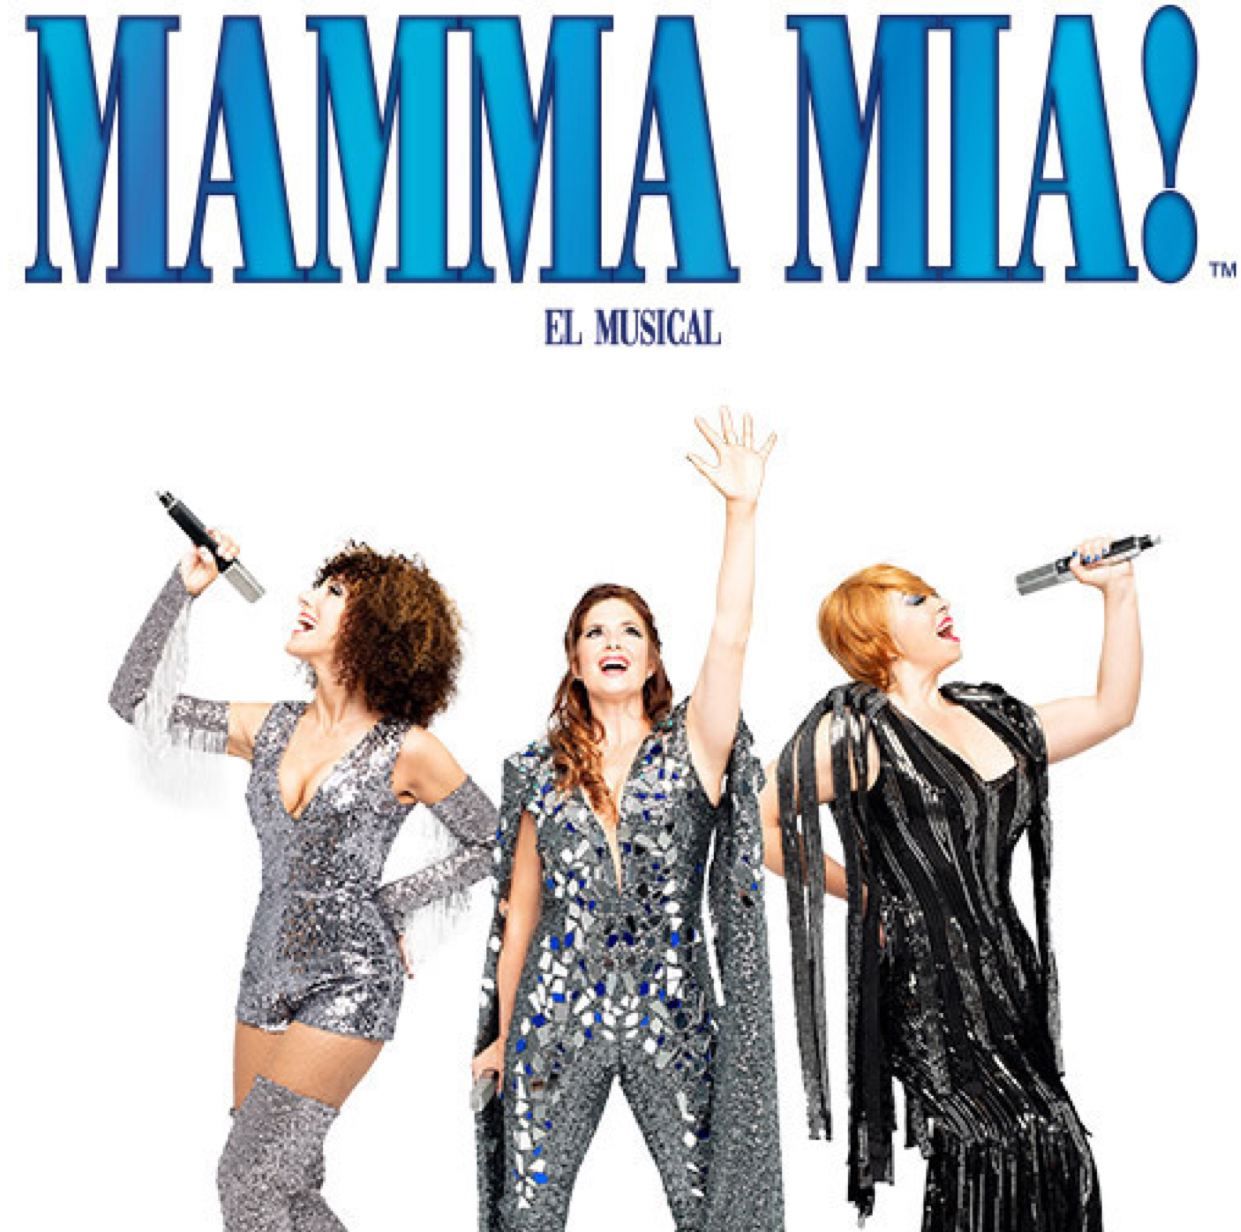 MAMMA-MIA-El-Musical-en-el-Teatro-Rialto-Madrid-Es-Teatro-